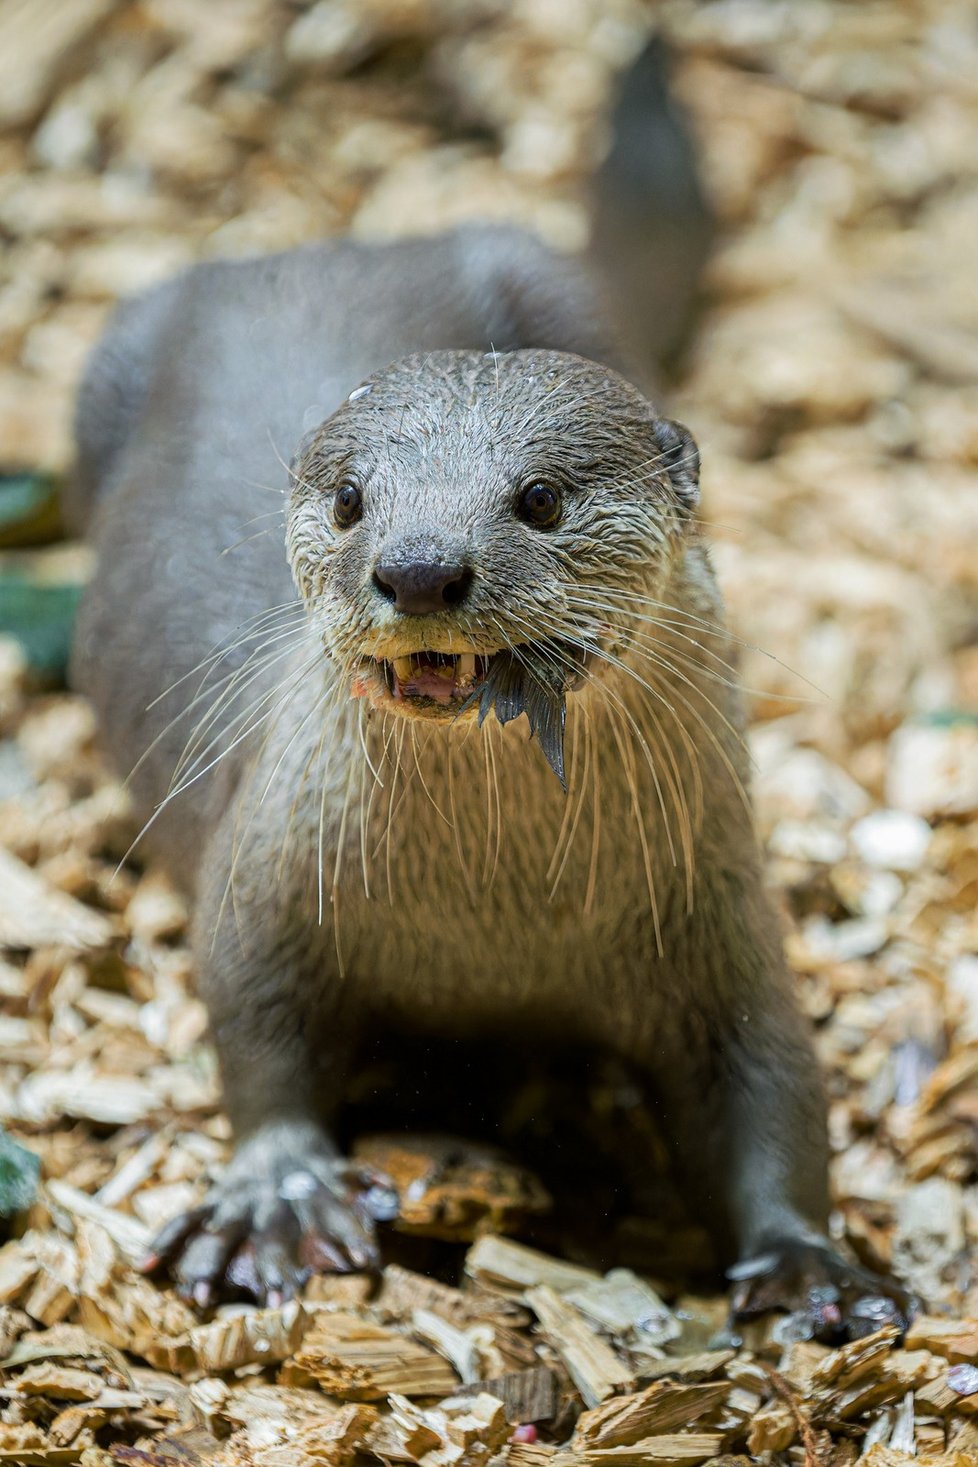 Pražská zoologická zahrada má nově samičku vydry hladkosrsté